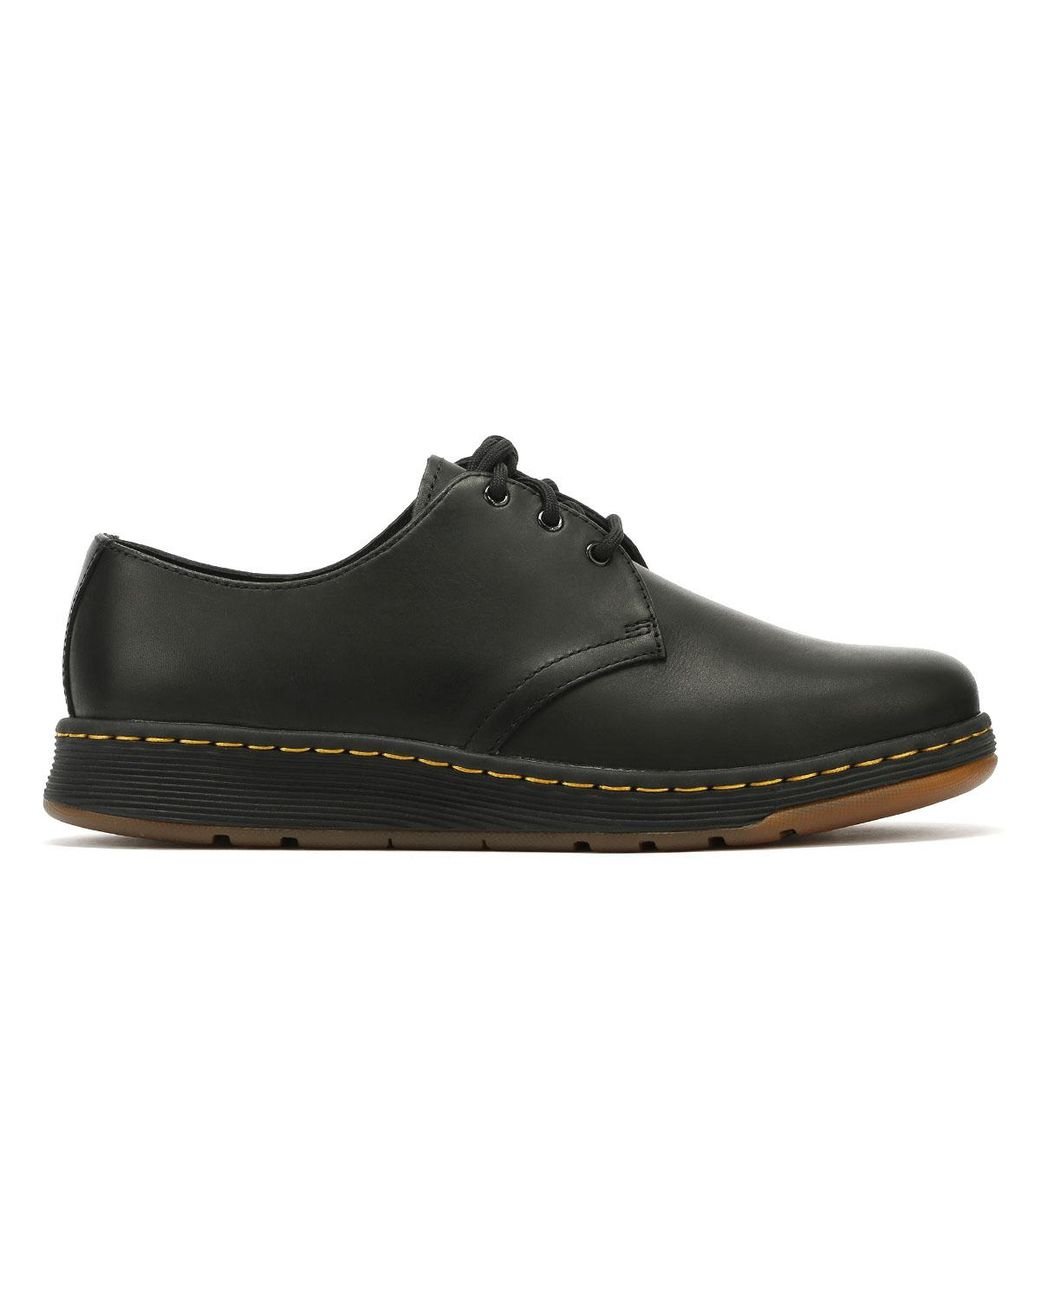 Dr. Martens Dr. Martens Cavendish Black Shoes for Men | Lyst UK